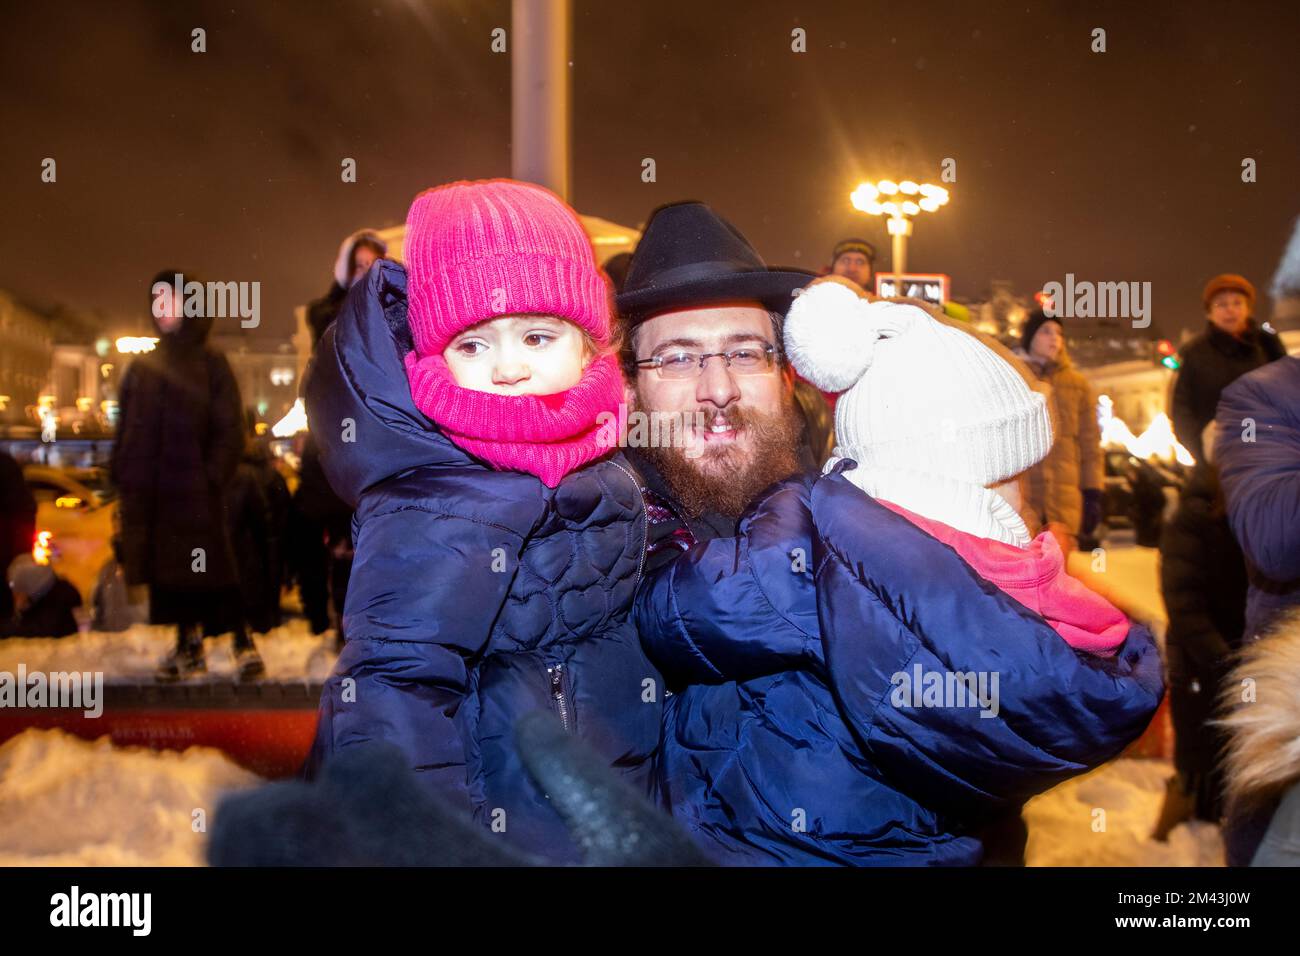 Moskau, Russland. 18.. Dezember 2022. Die Menschen warten darauf, dass das Feuer auf einer Straße während einer Veranstaltung zur Feier von Hanukkah auf dem Platz der Revolution in Moskau, Russland, angezündet wird. Hanukkah ist ein jüdisches Festival, das der Wiedererlangung Jerusalems im 2.. Jahrhundert v. Chr. gedenkt. Dieses Jahr wird der 18-26. Dezember gefeiert. Nikolay Vinokurov/Alamy Live News Stockfoto